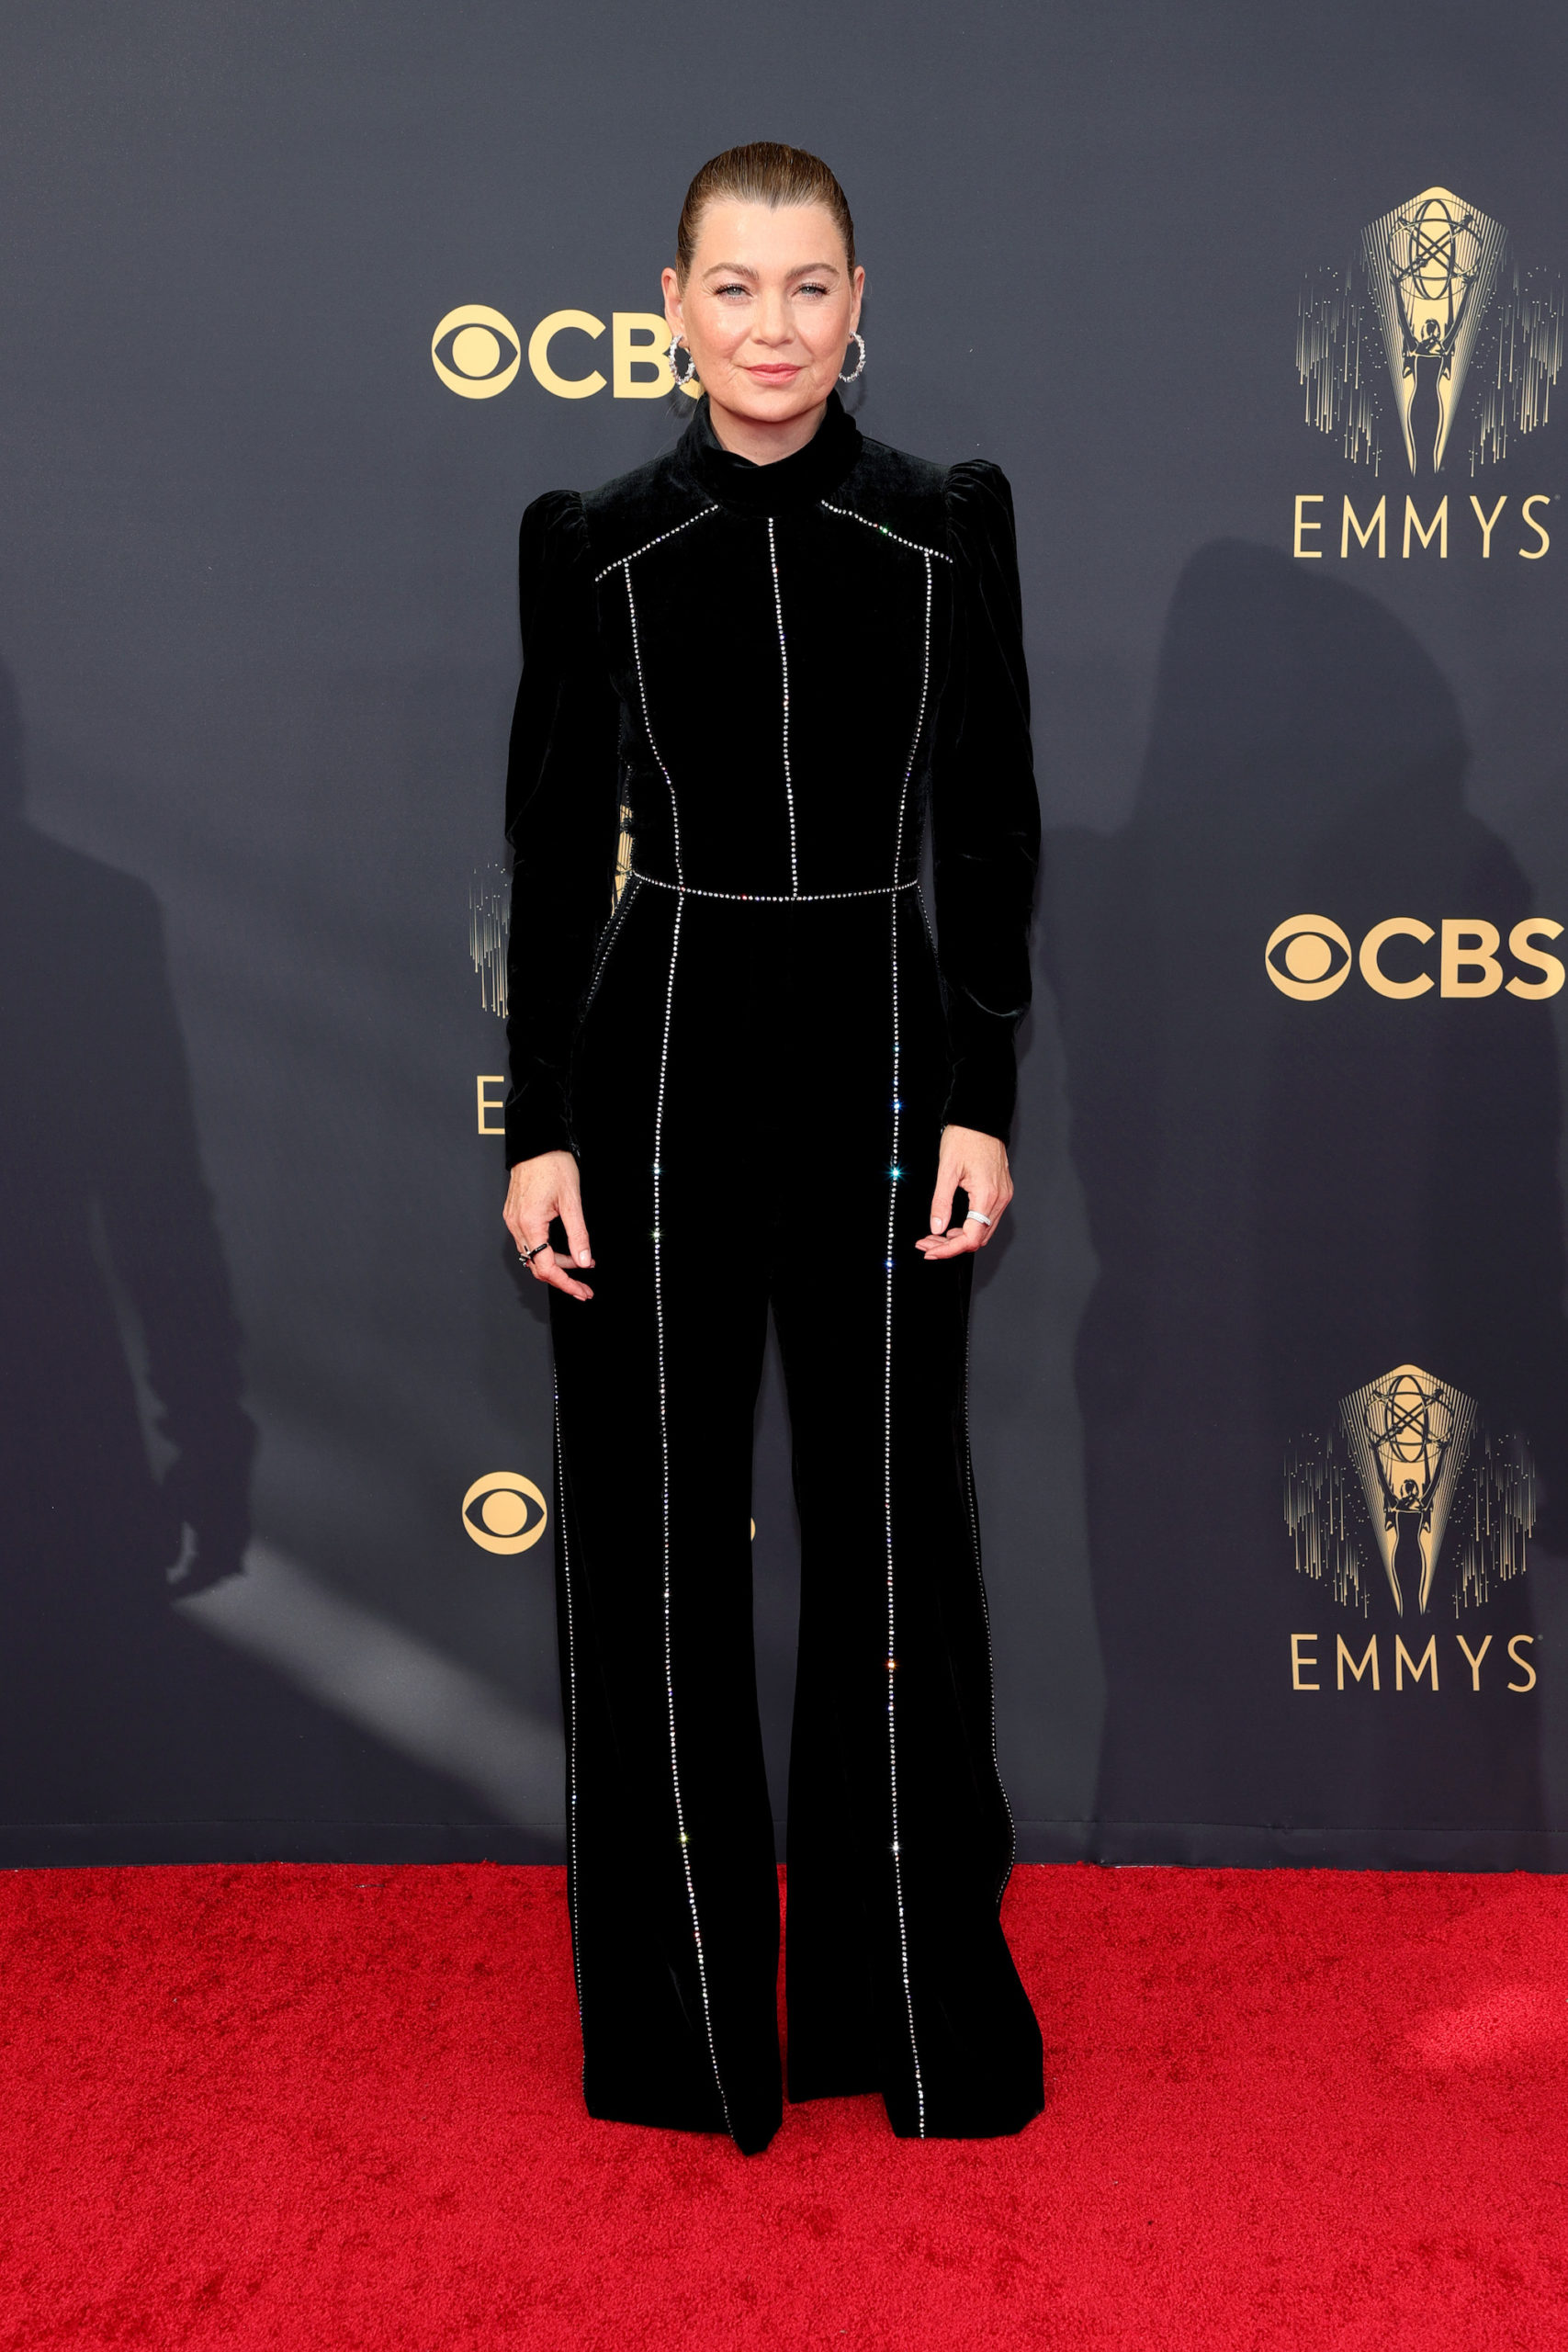 Ellen Pompeo at the 2021 Emmys